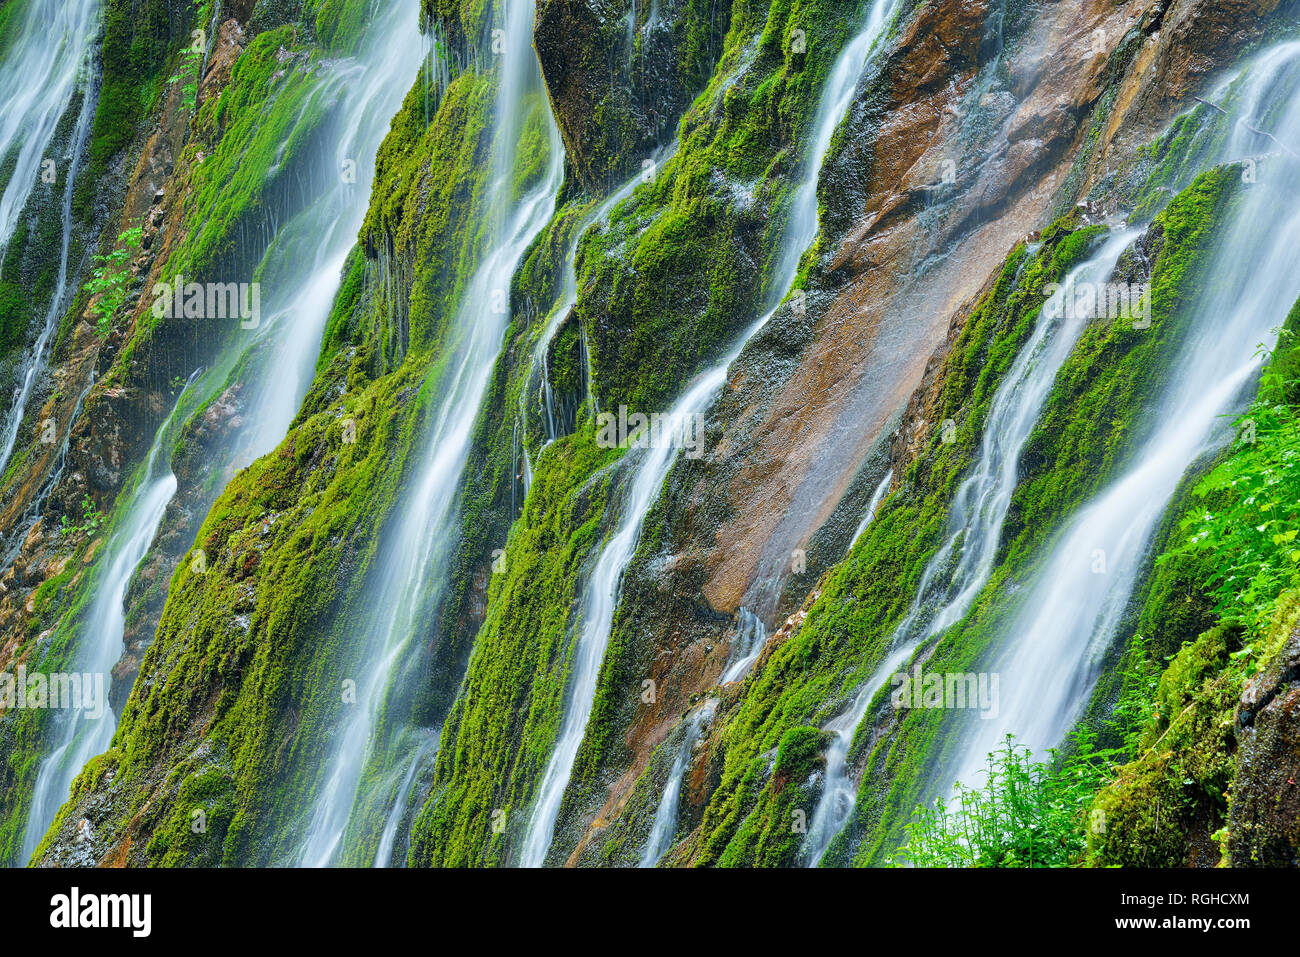 Cascate di acqua verso il basso le scogliere del famoso Wimbachklamm, Parco Nazionale di Berchtesgaden, Baviera, Germania Foto Stock